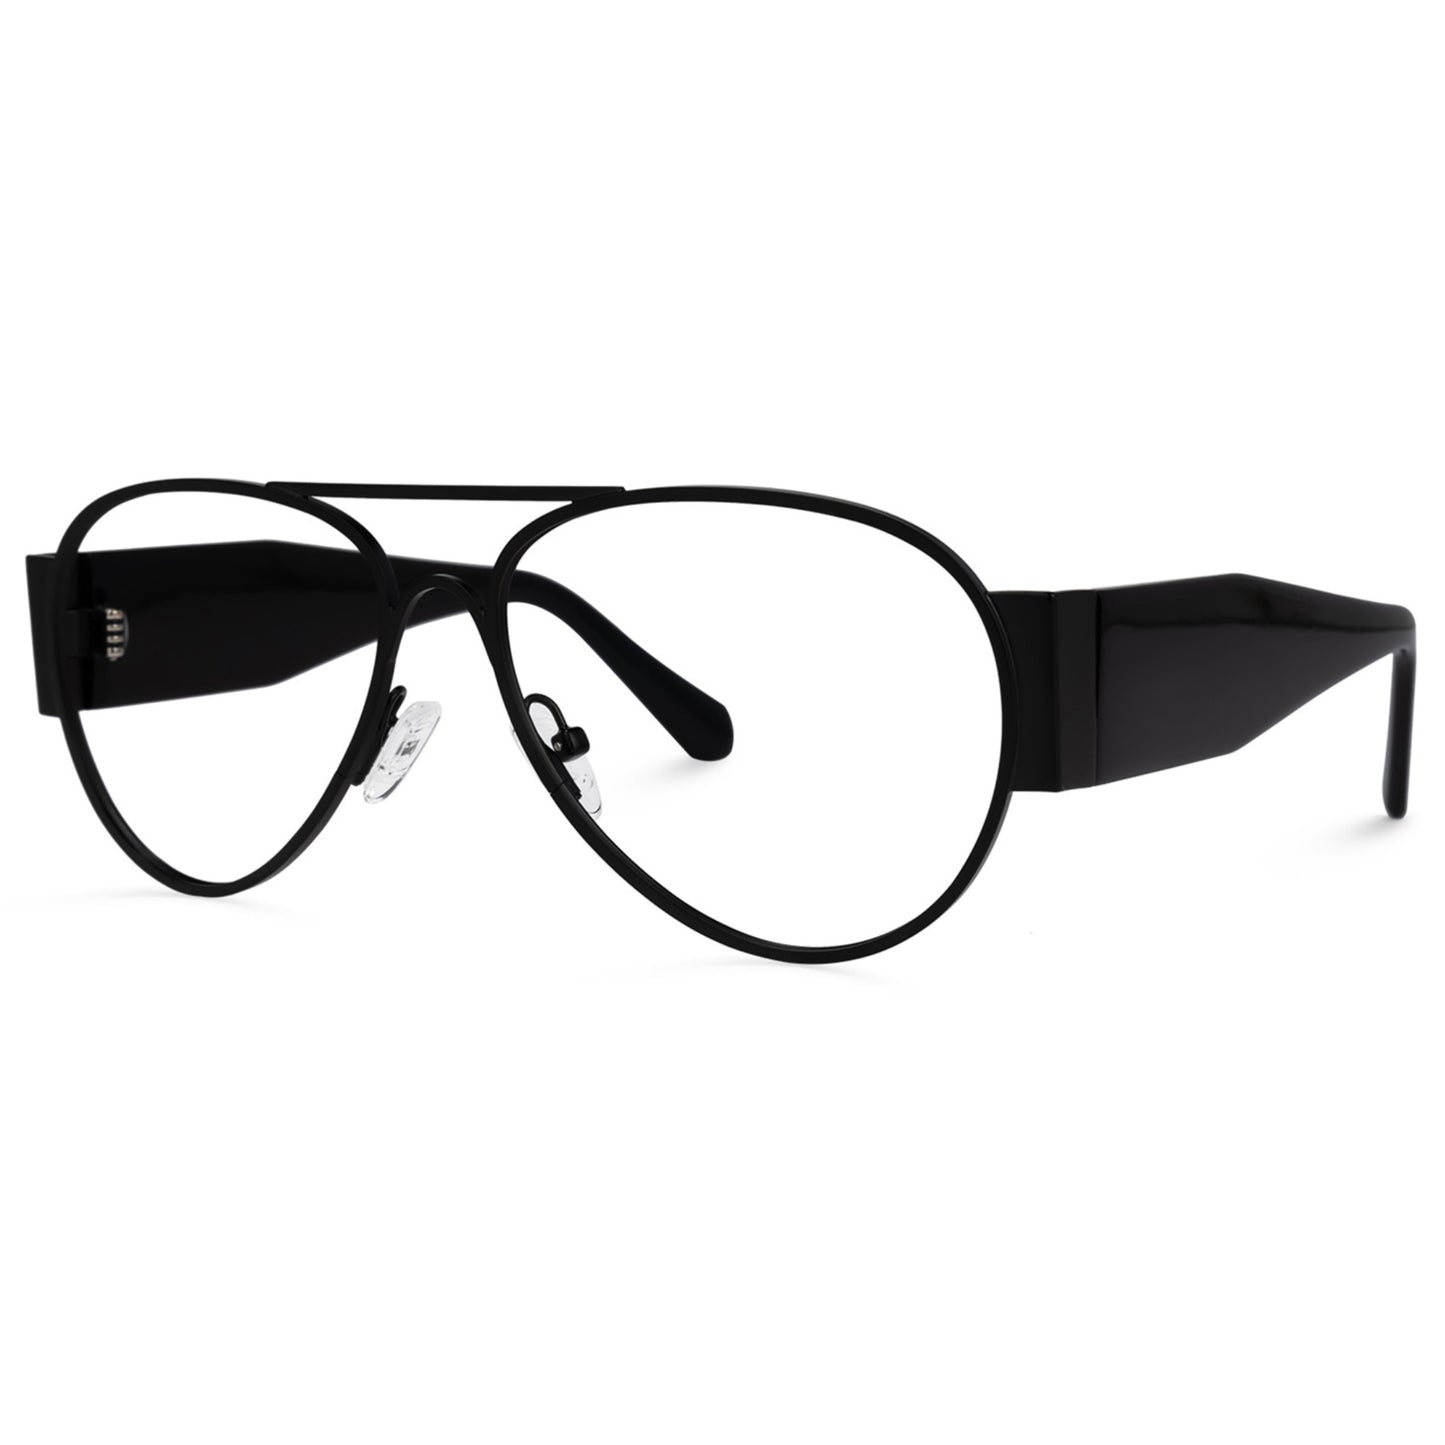 Henry - Blue Light Glasses - Optin Store 